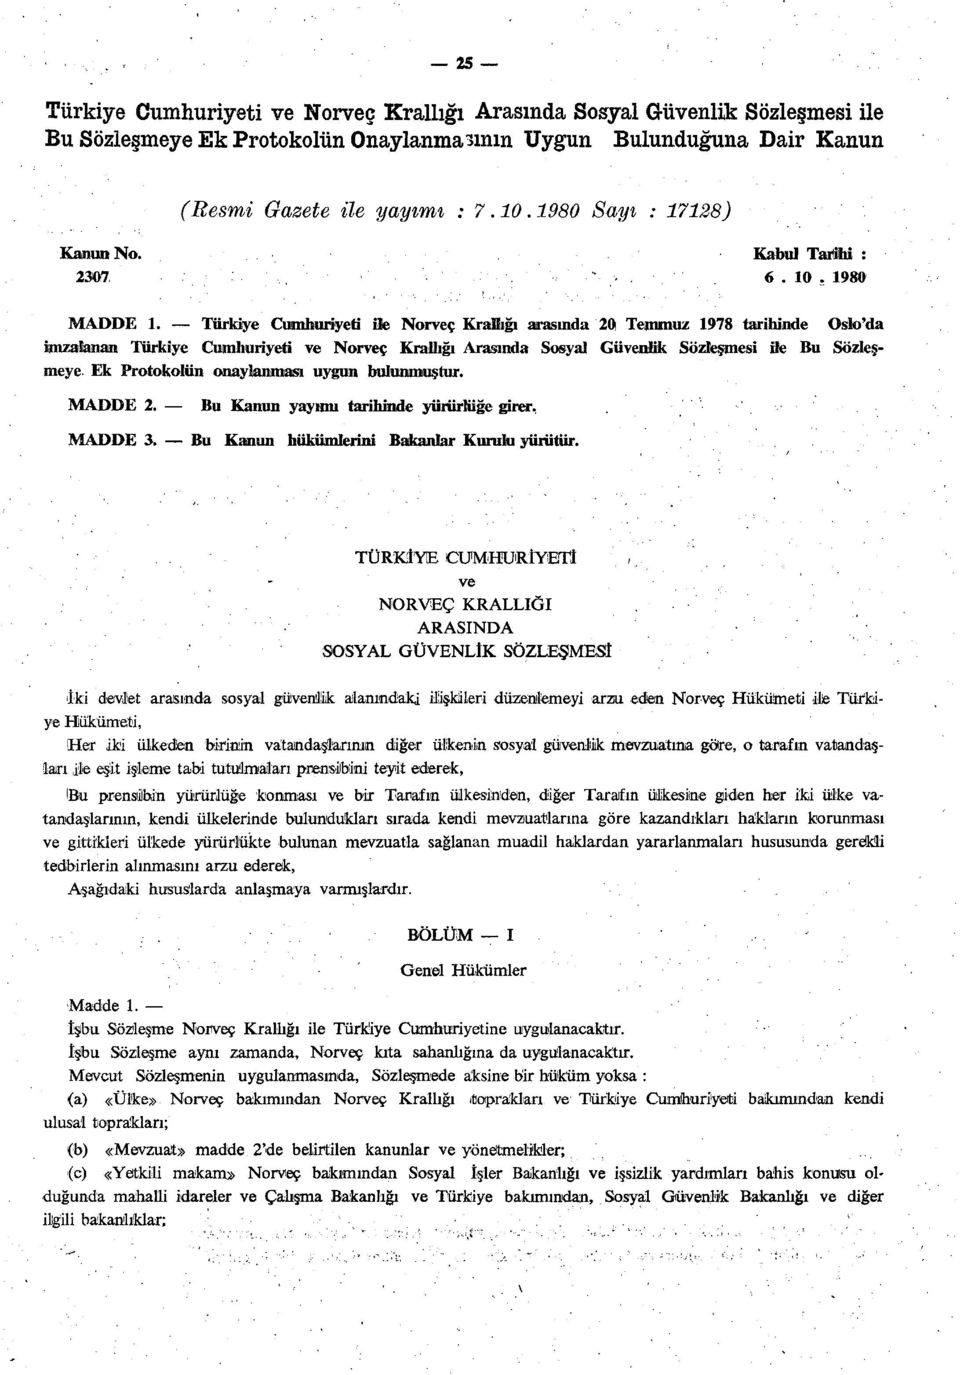 Türkiye Cumhuriyeti ile Norveç Kraihğı arasında 20 Temmuz 1978 tarihinde Oslo'da imzalanan Türkiye Cumhuriyeti ve Norveç Krallığı Arasında Sosyal Güvenlik Sözleşmesi ile Bu Sözleşmeye Ek Protokolün